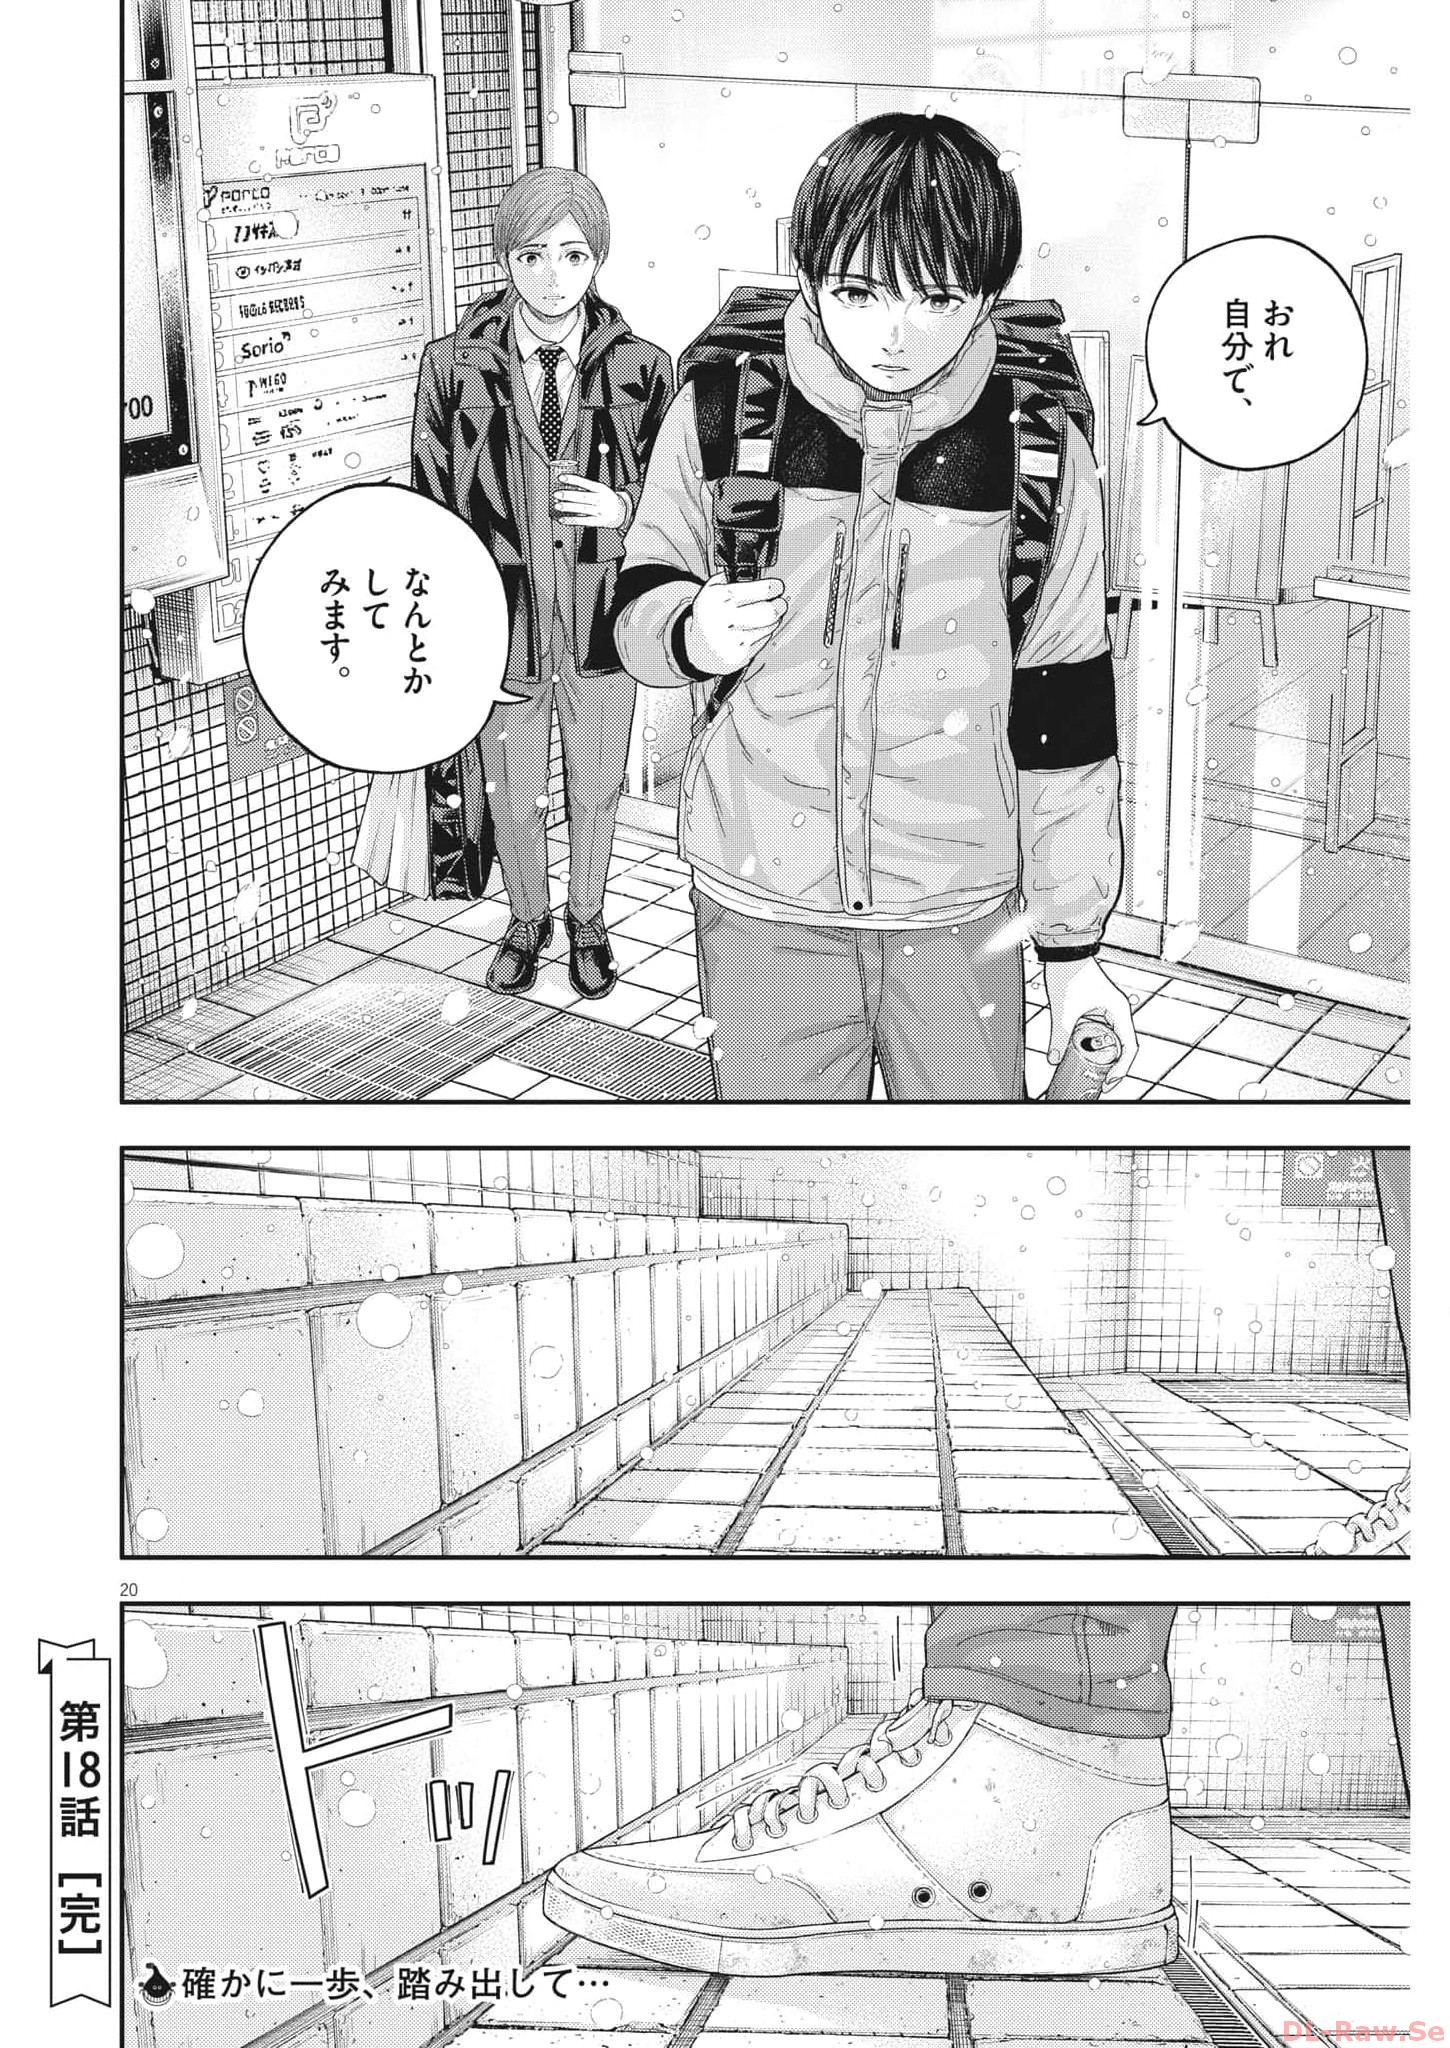 Yumenashi-sensei no Shinroshidou - Chapter 18 - Page 20